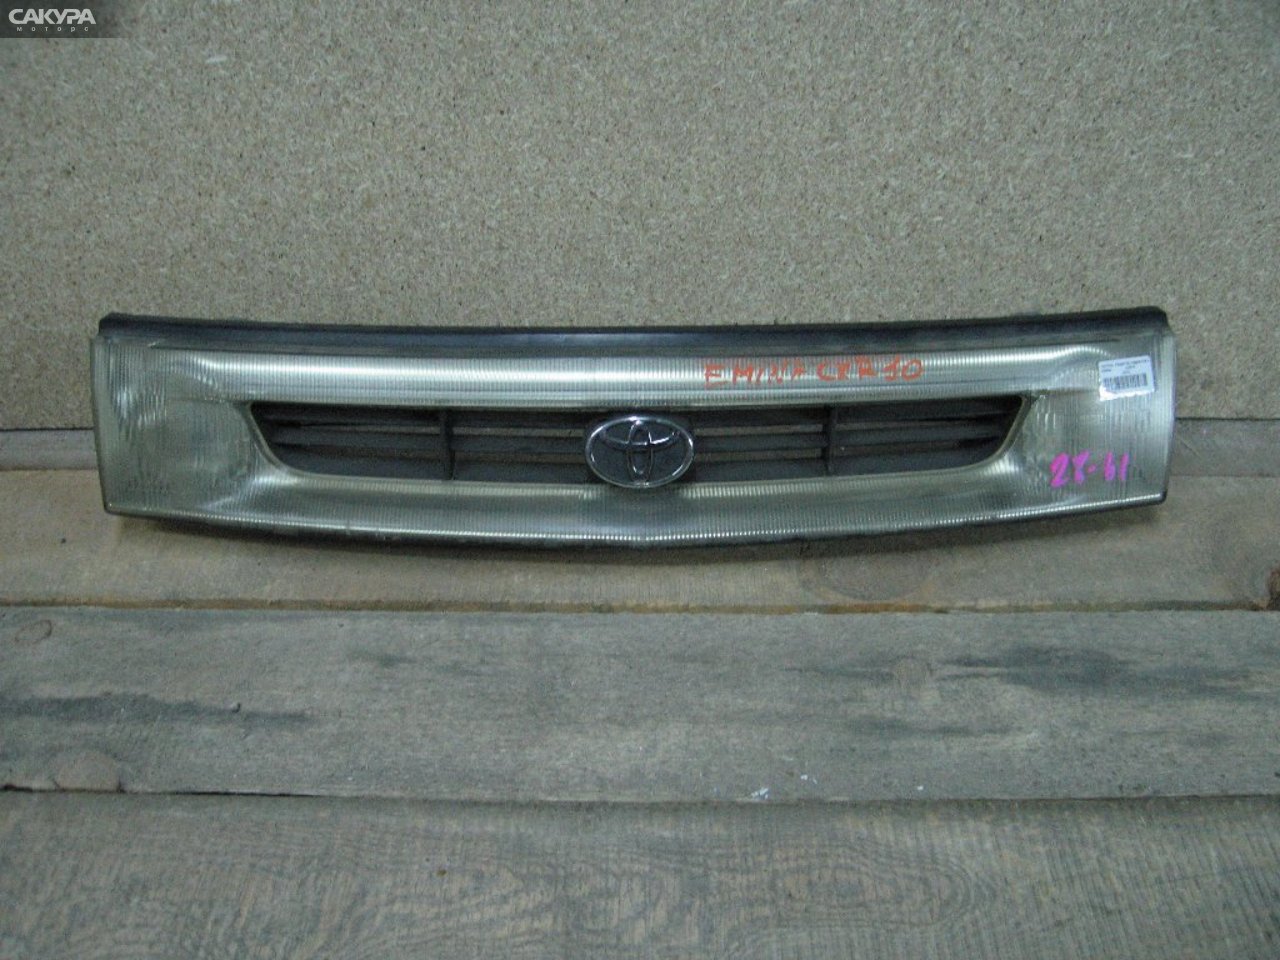 Решетка радиатора Toyota Estima Emina CXR10G: купить в Сакура Абакан.